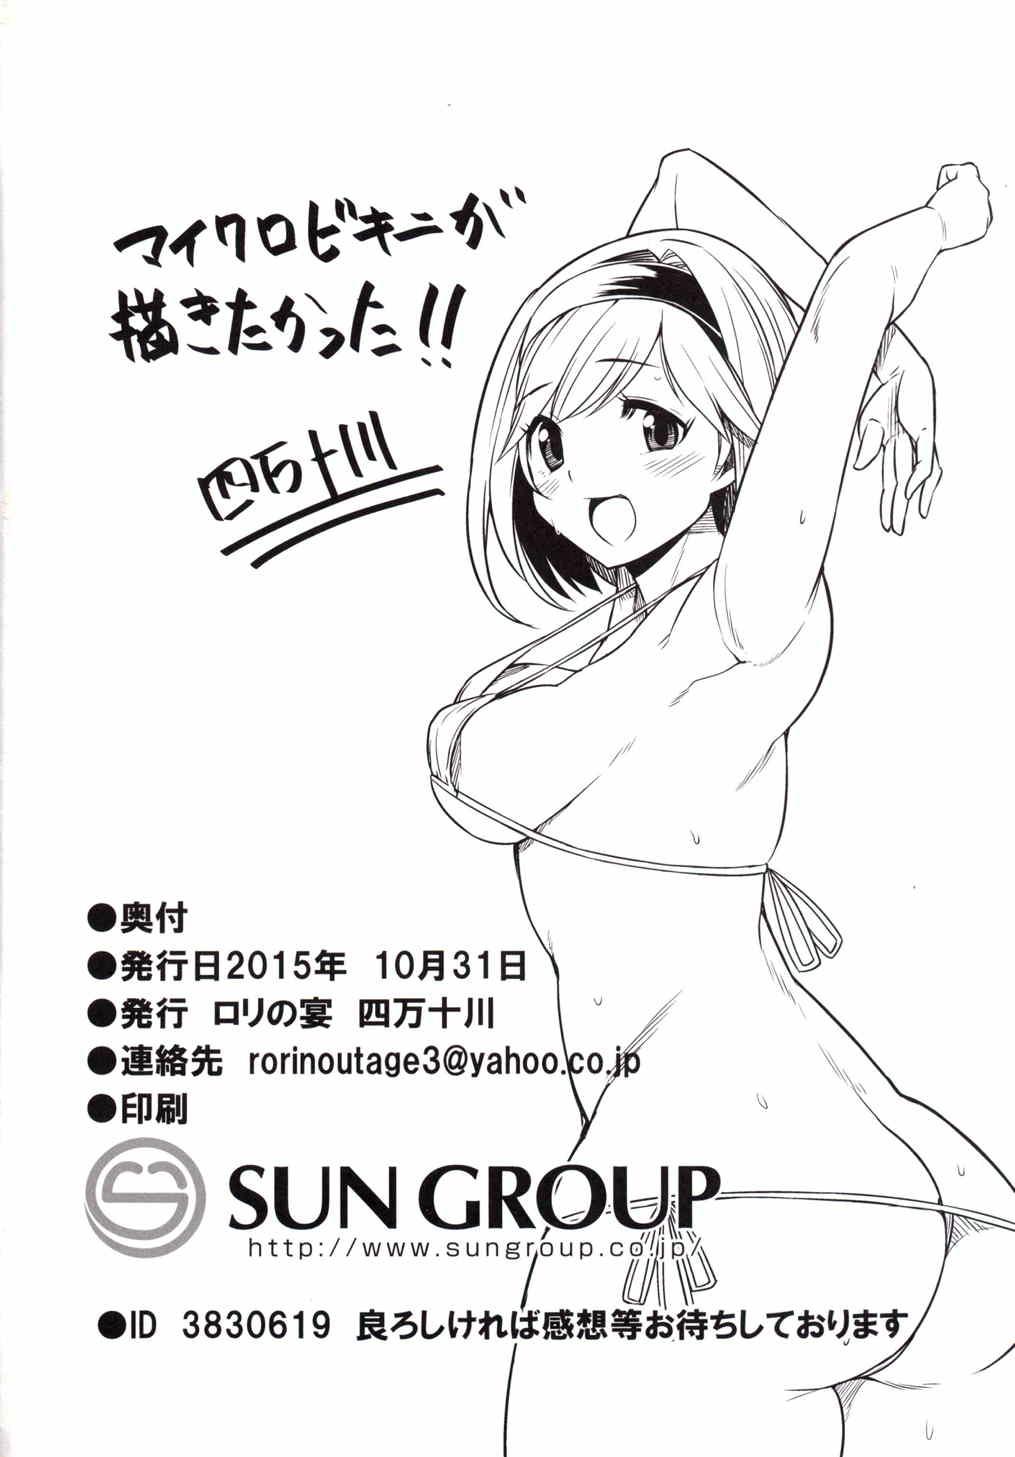 Tgirls (Fata Grande Kikuusai) [Rorinoutage (Shimantogawa)] Idol Djeeta-chan Himitsu no Off-kai (Granblue Fantasy) - Granblue fantasy Slapping - Page 13